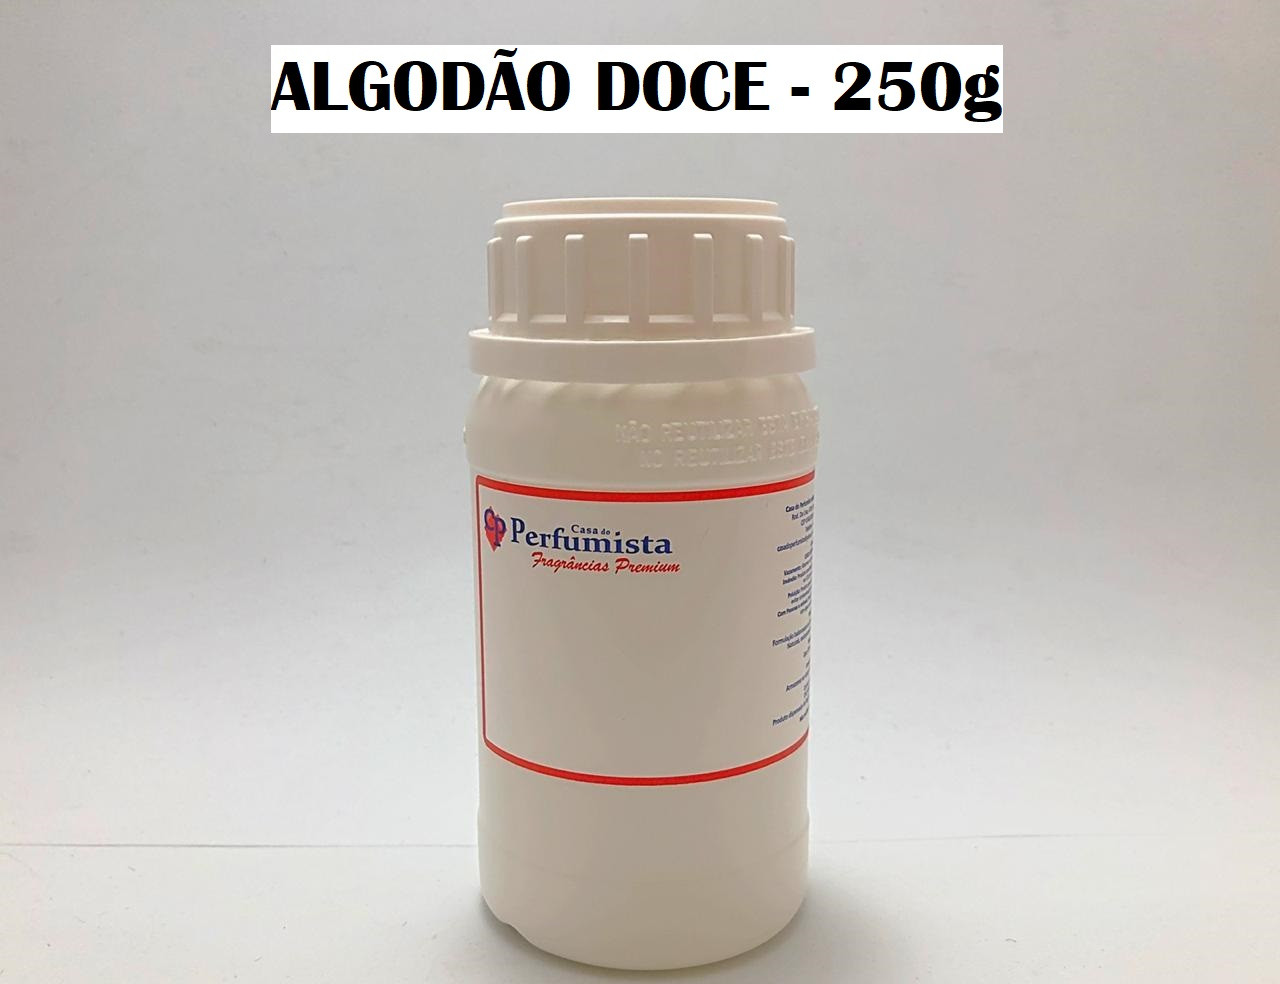 ALGODÃO DOCE - 250g